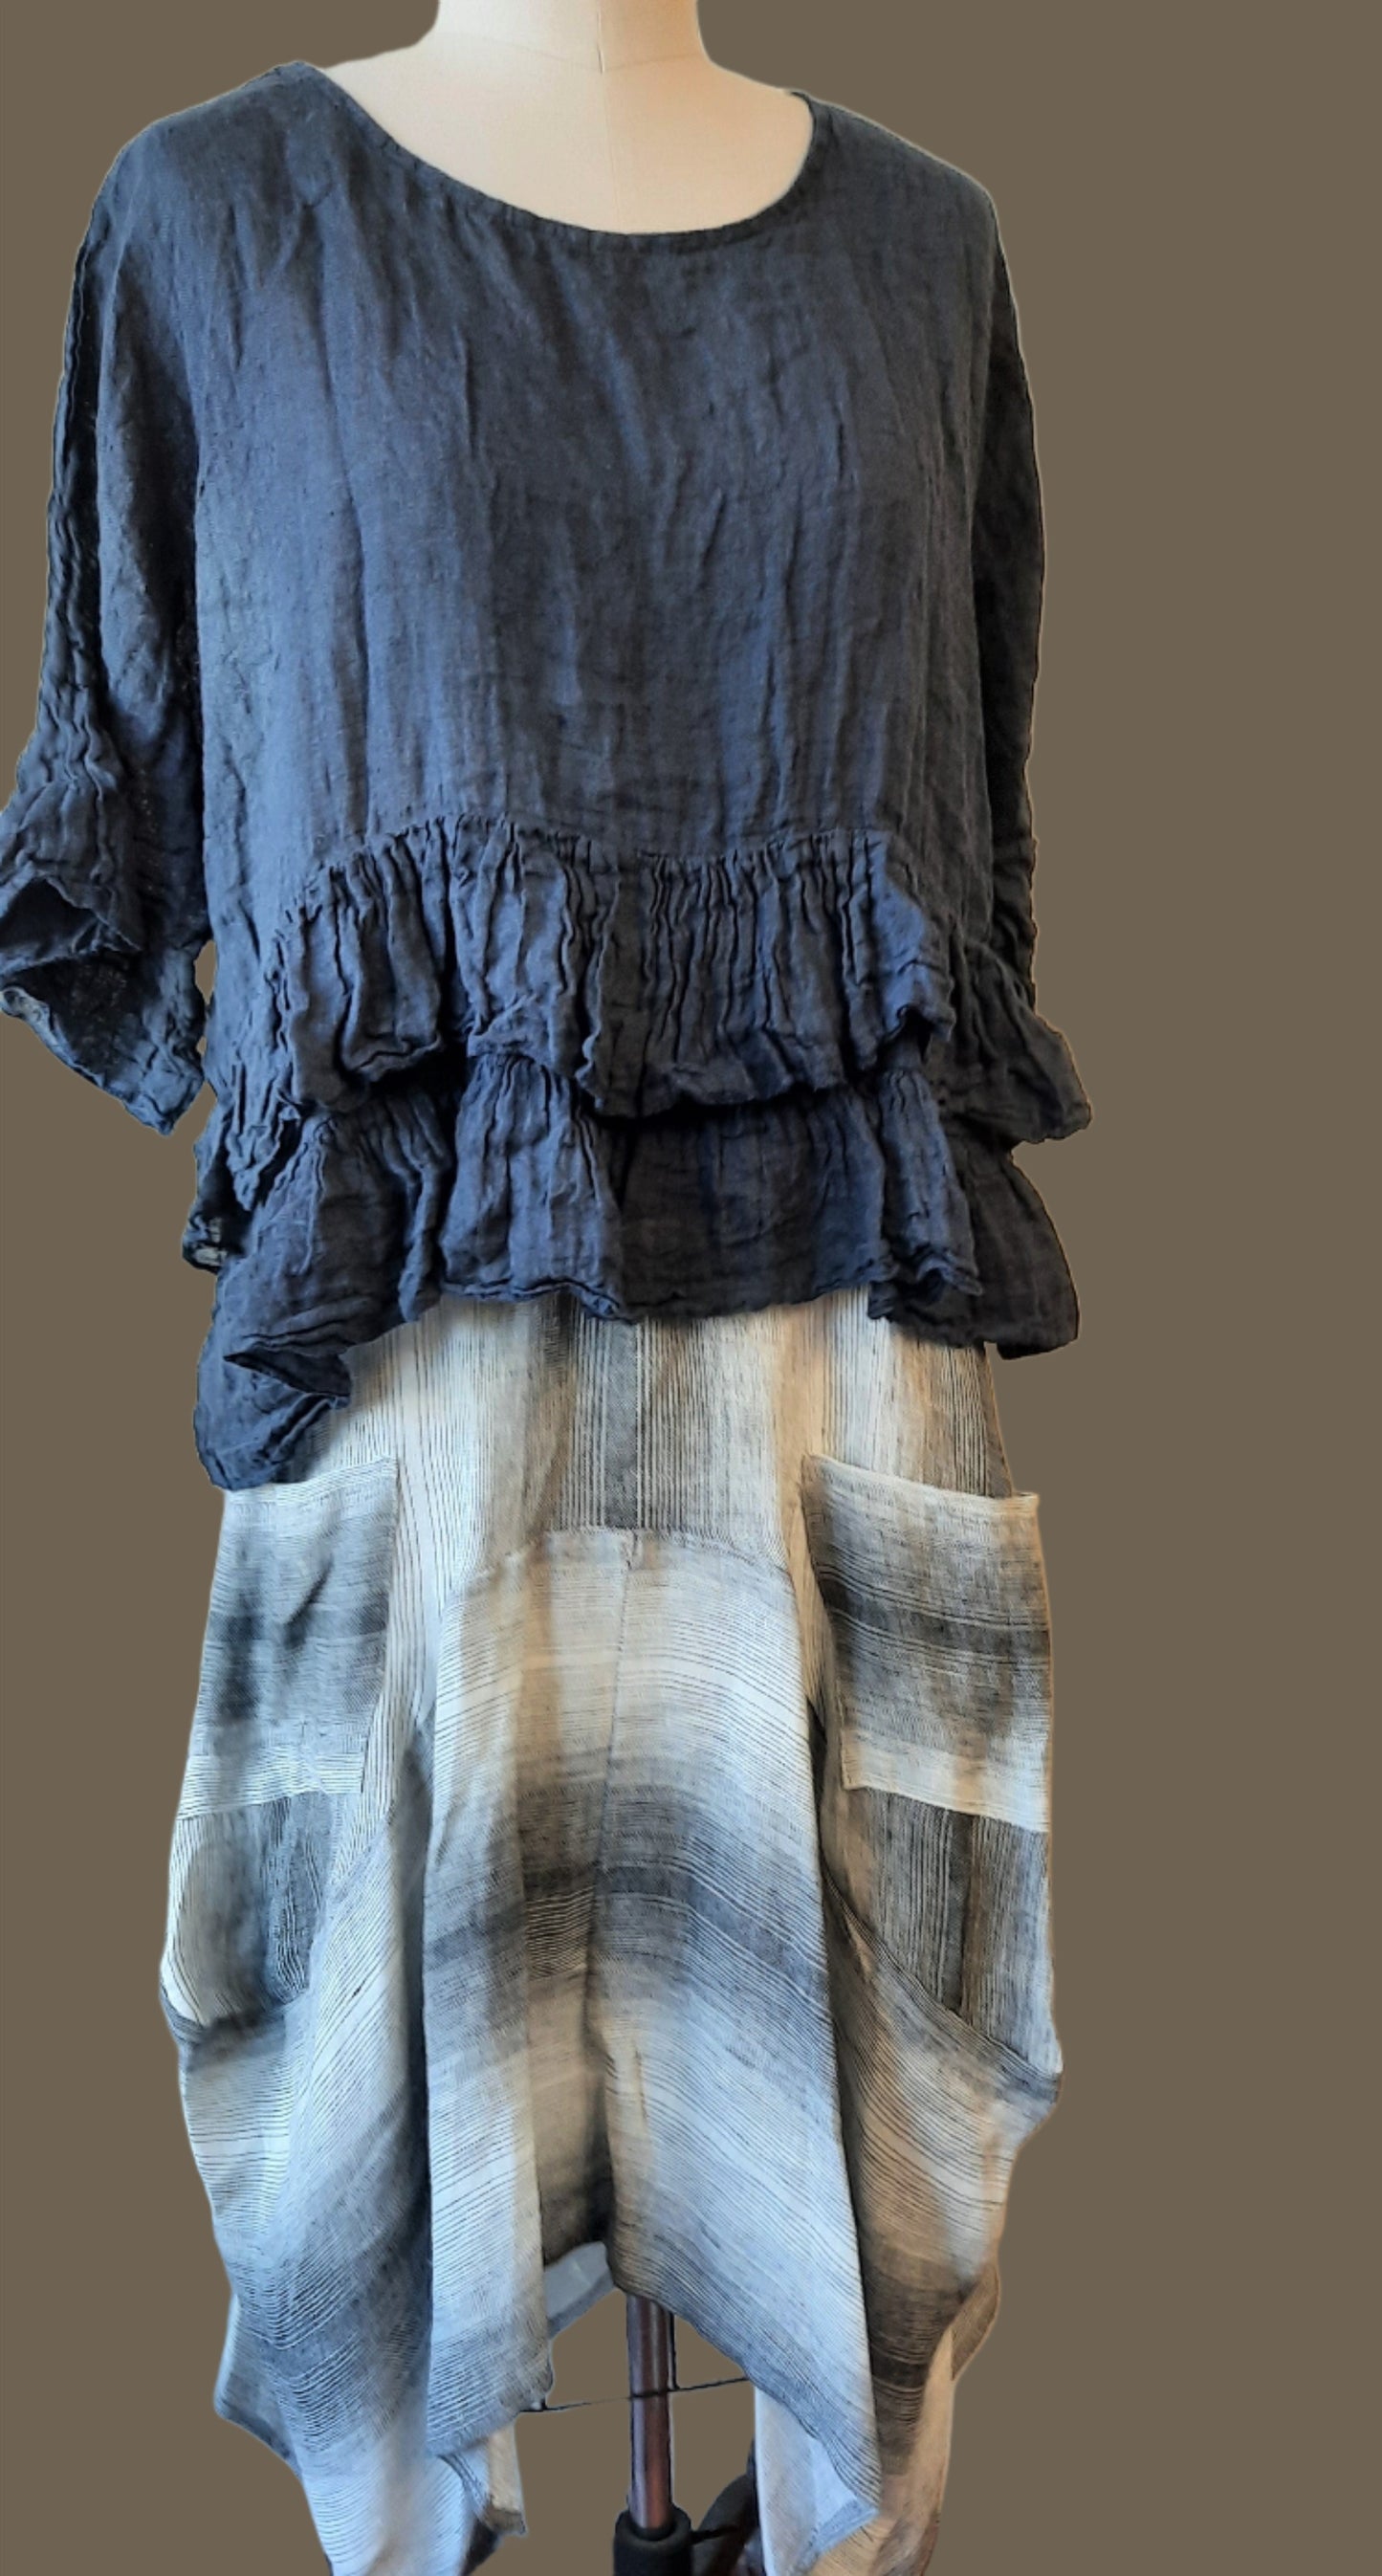 INIZIO ITALY Magic Stipe Linen Skirt fiberartboutique.com